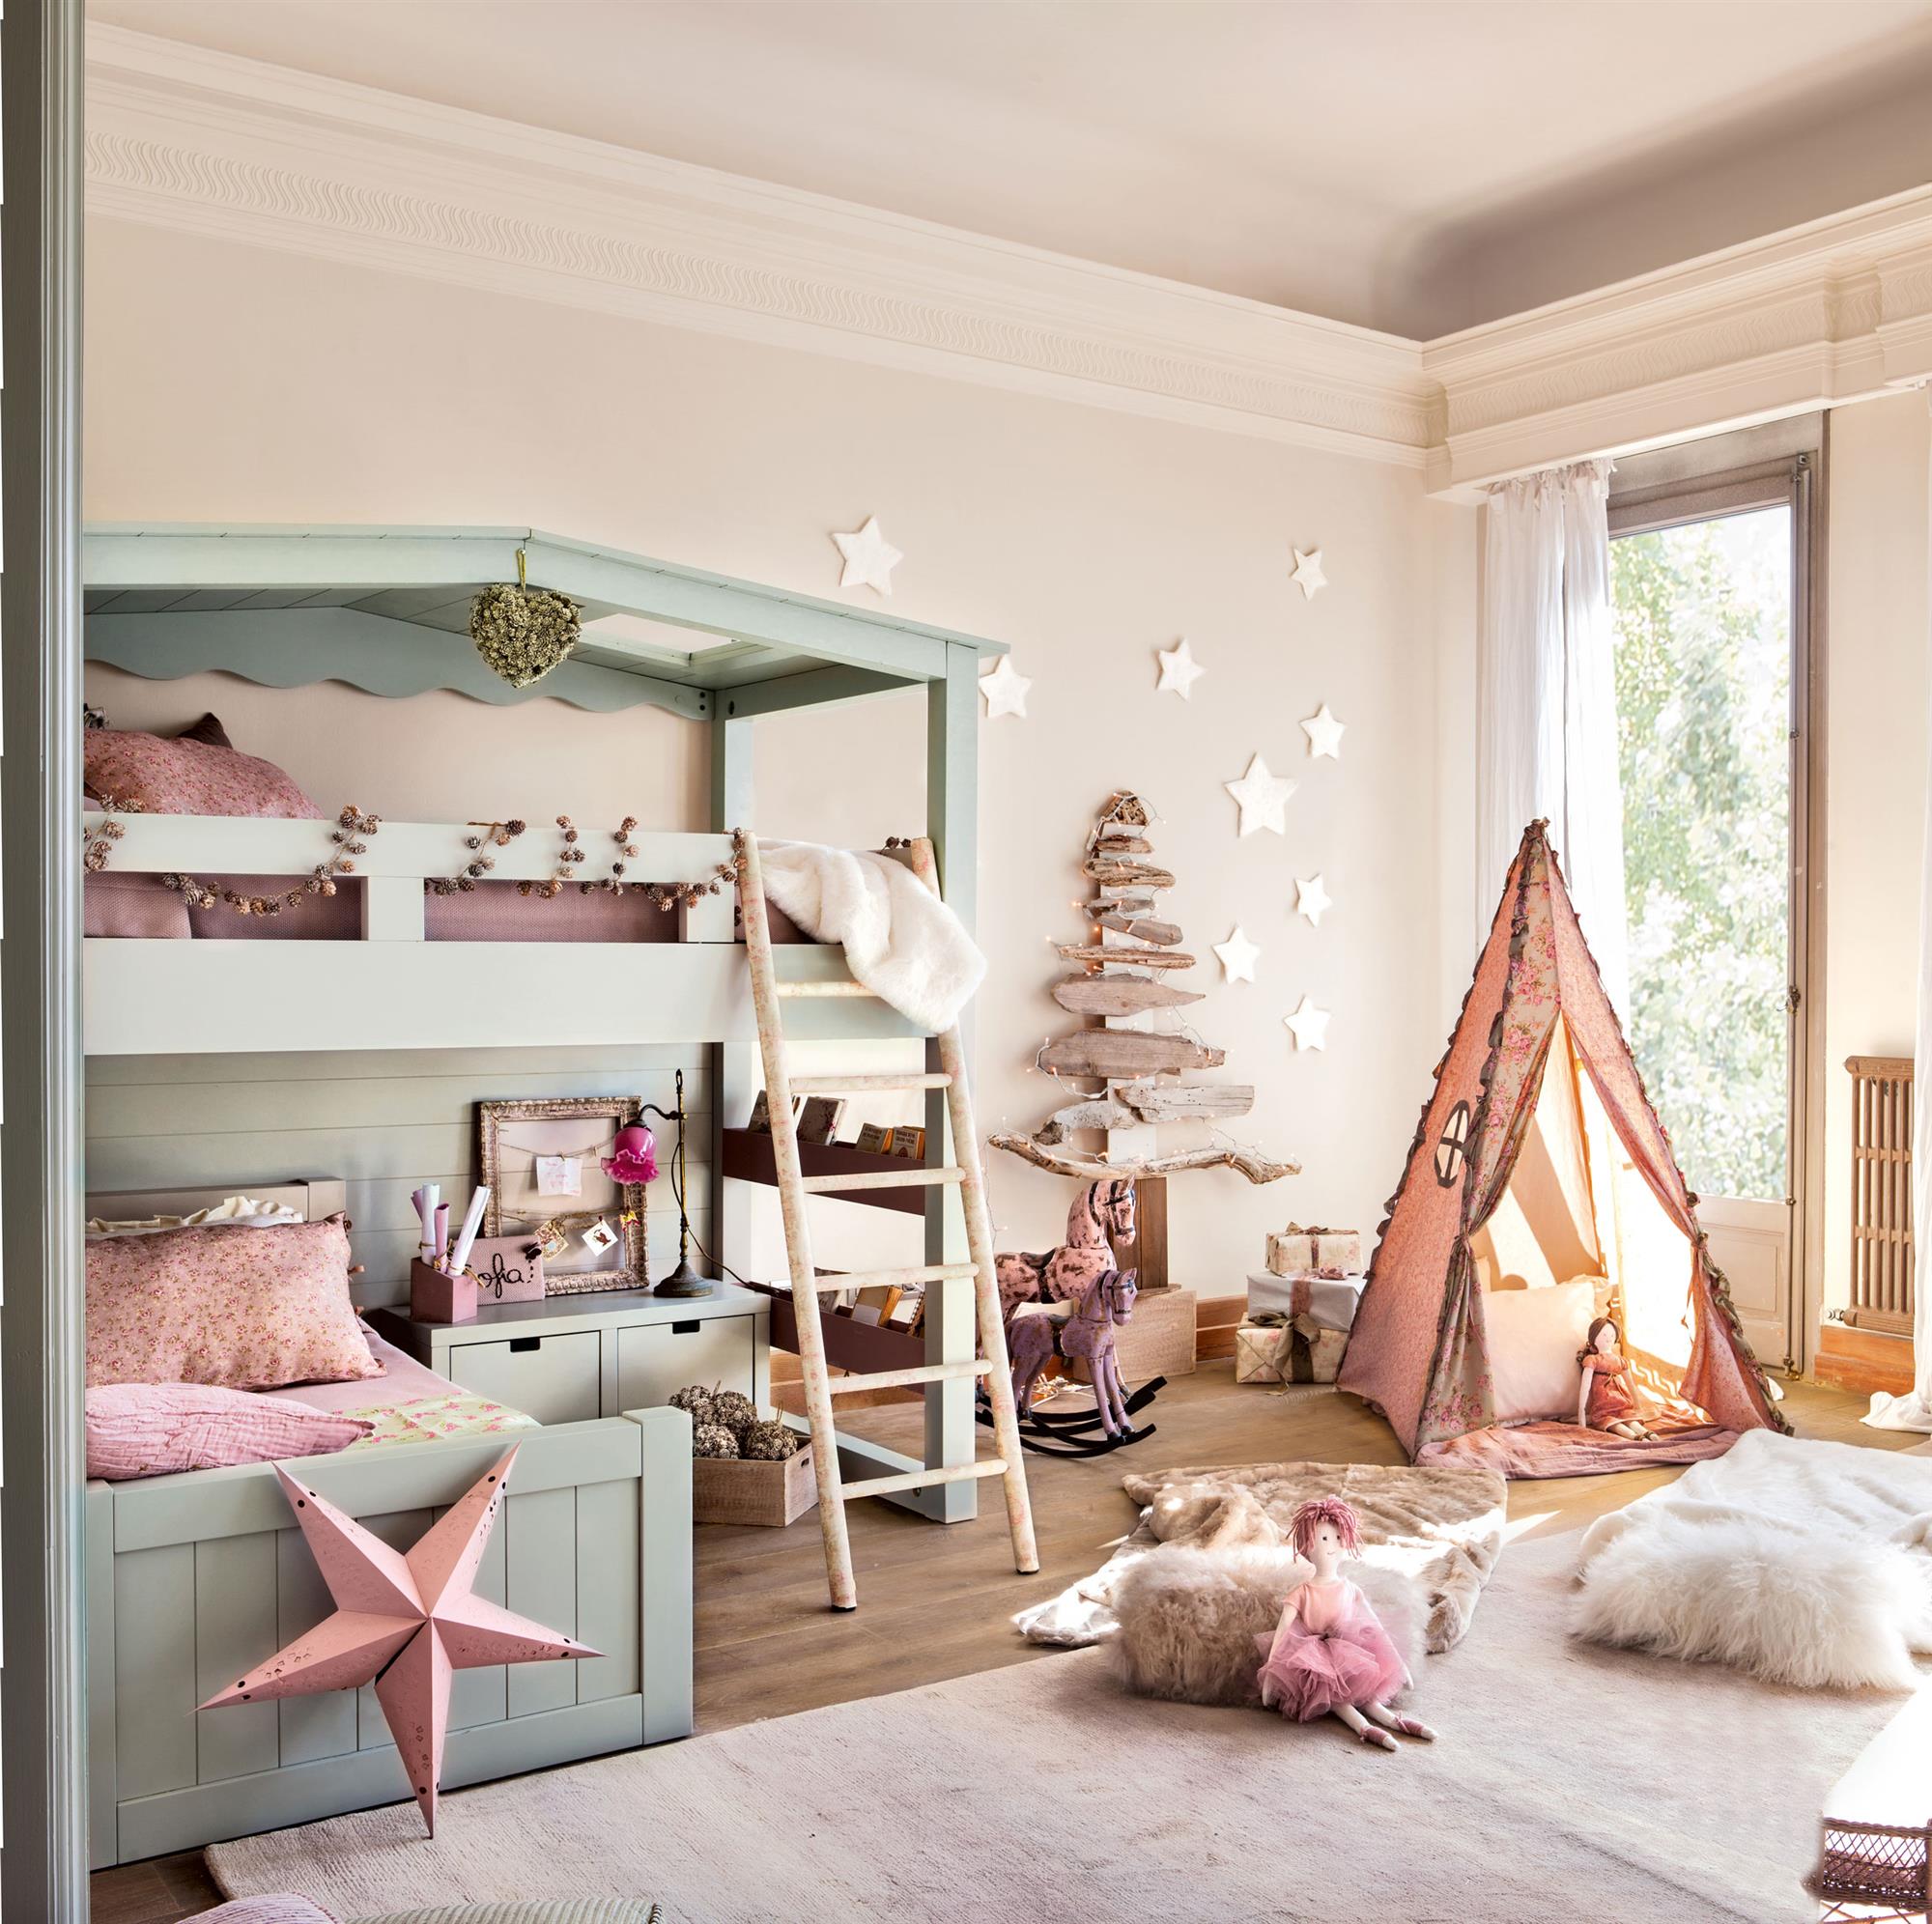 Dormitorio infantil con litera turquesa, tienda tipi y árbol de Navidad DIY.